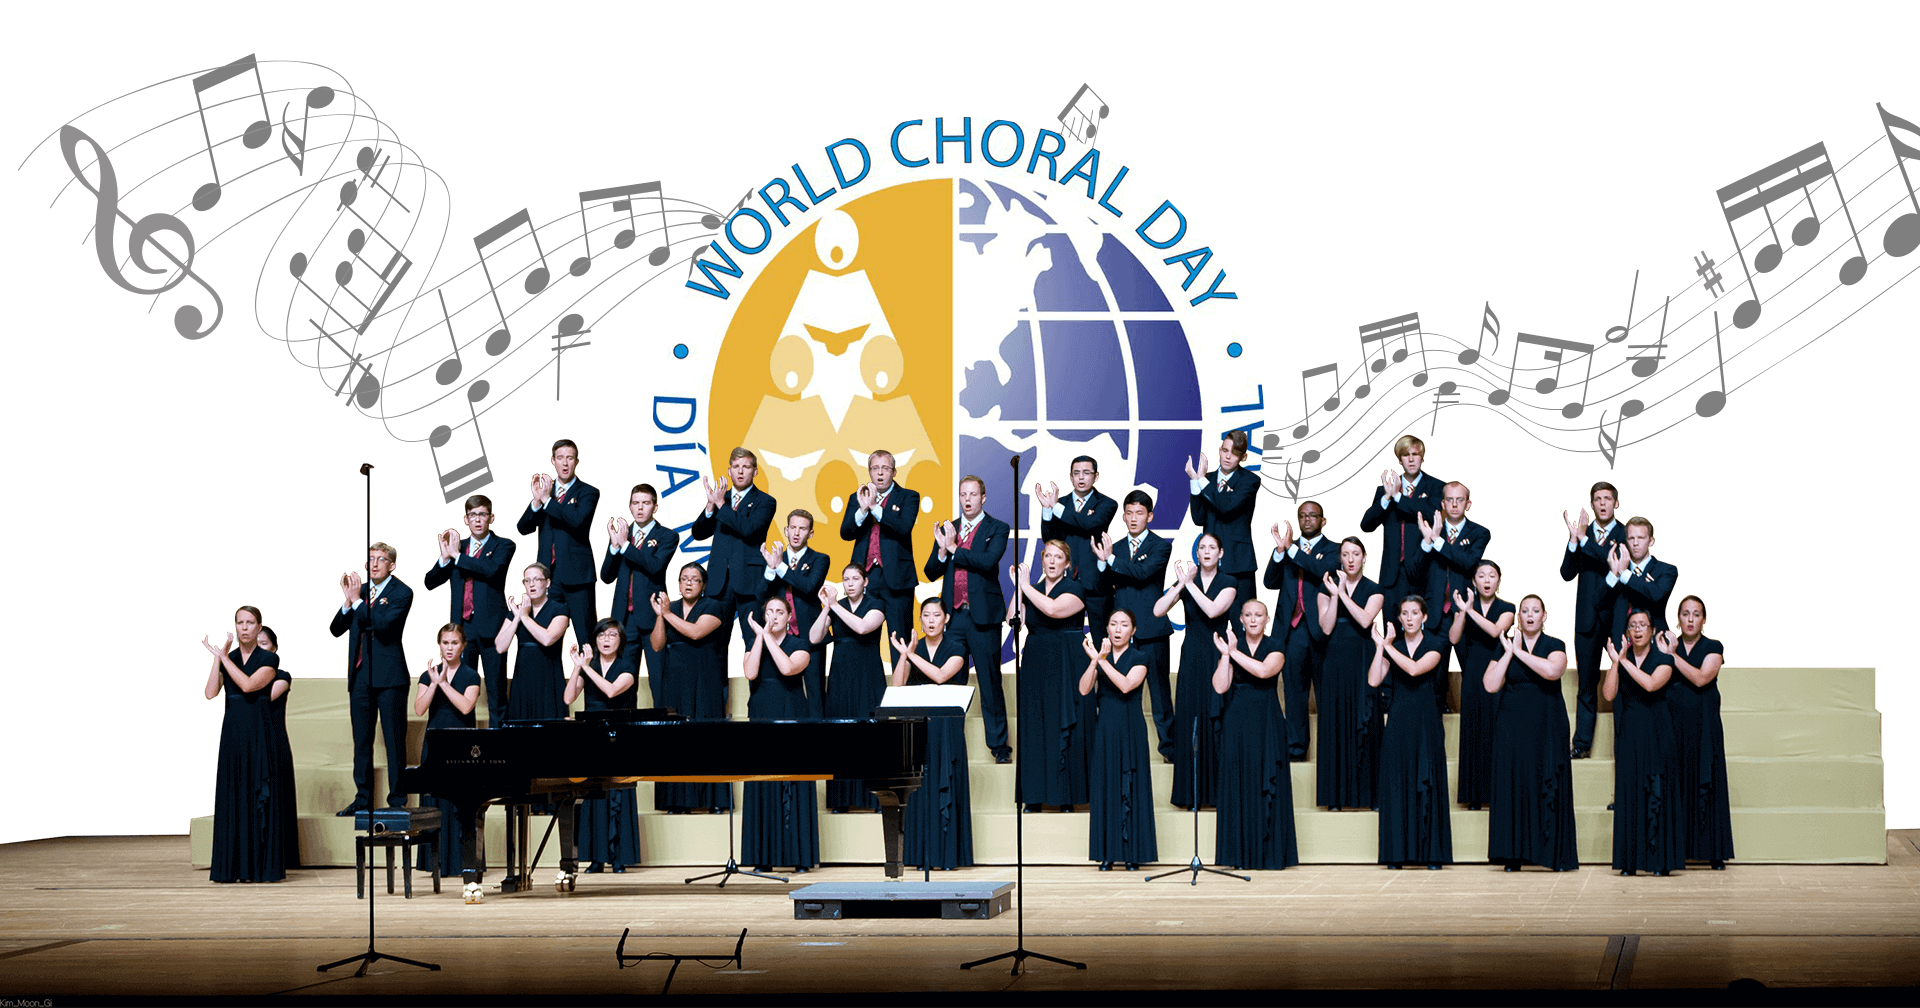 Вокально хоровая. Всемирный день хорового искусства (World Choral Day). Всемирный день хорового пени. Всемирный день пения. День хорового пения.